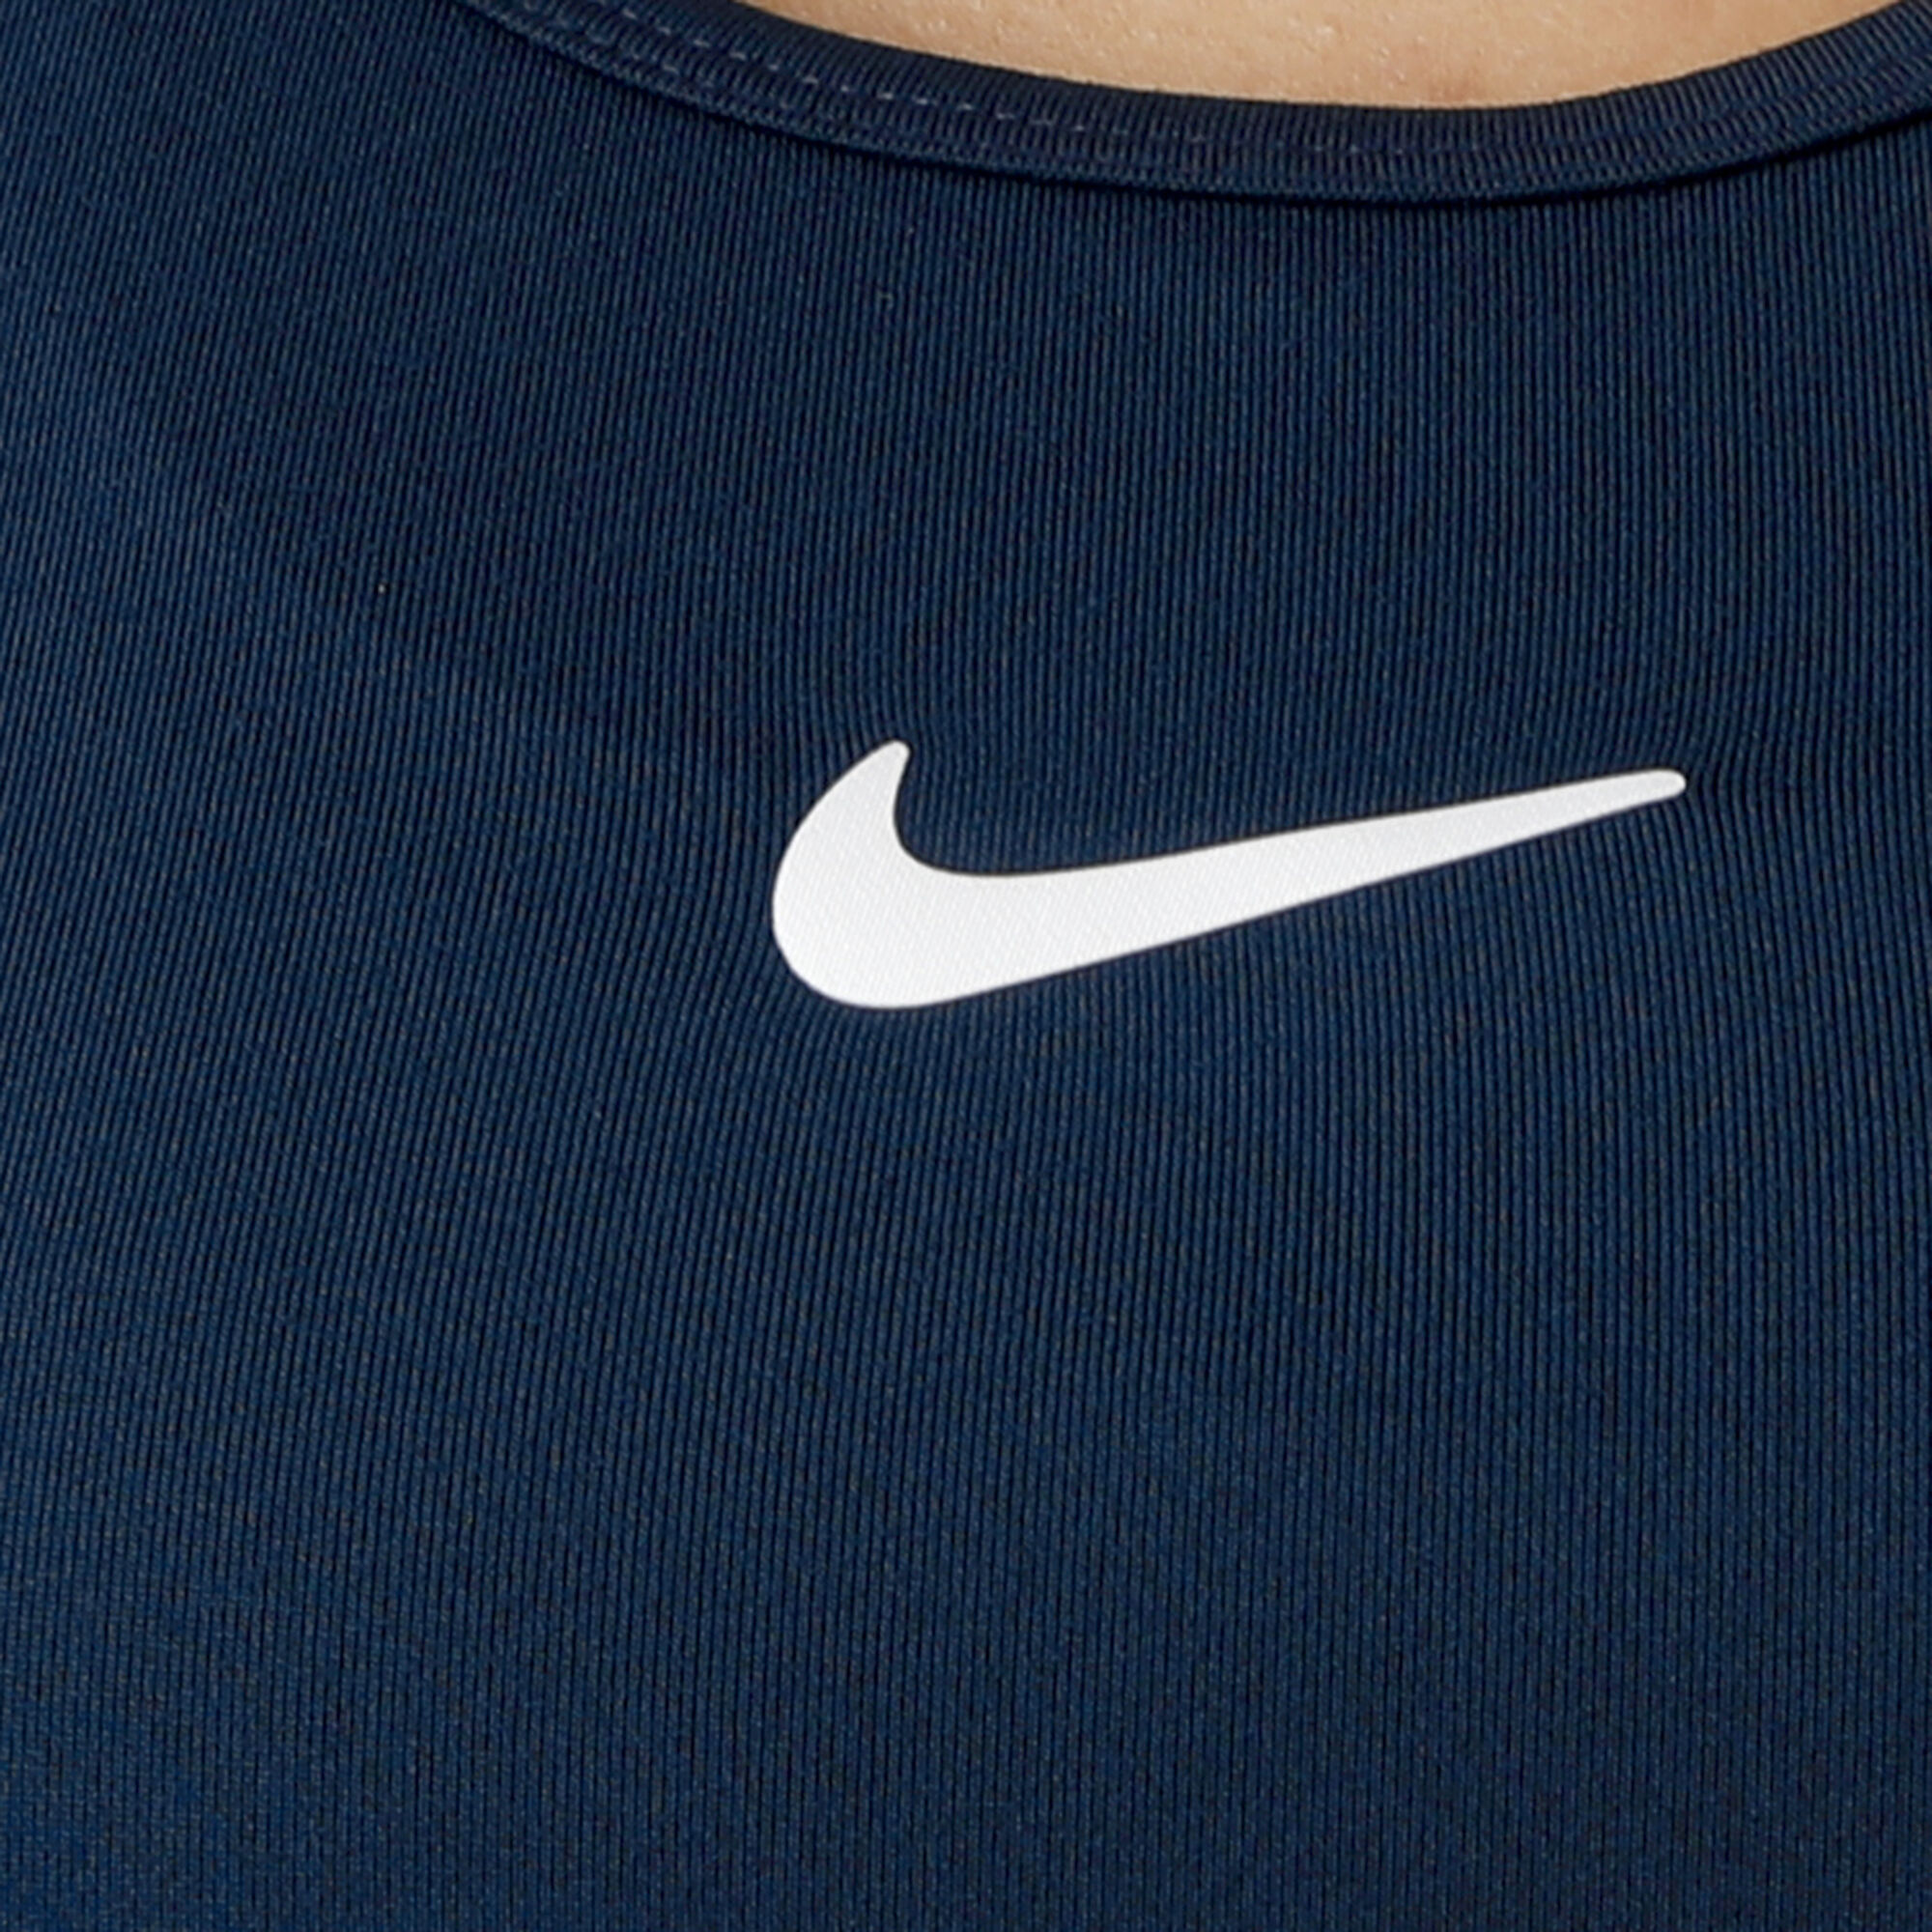 buy Nike Court Long Sleeve Women - Dark Blue, White online | Tennis-Point